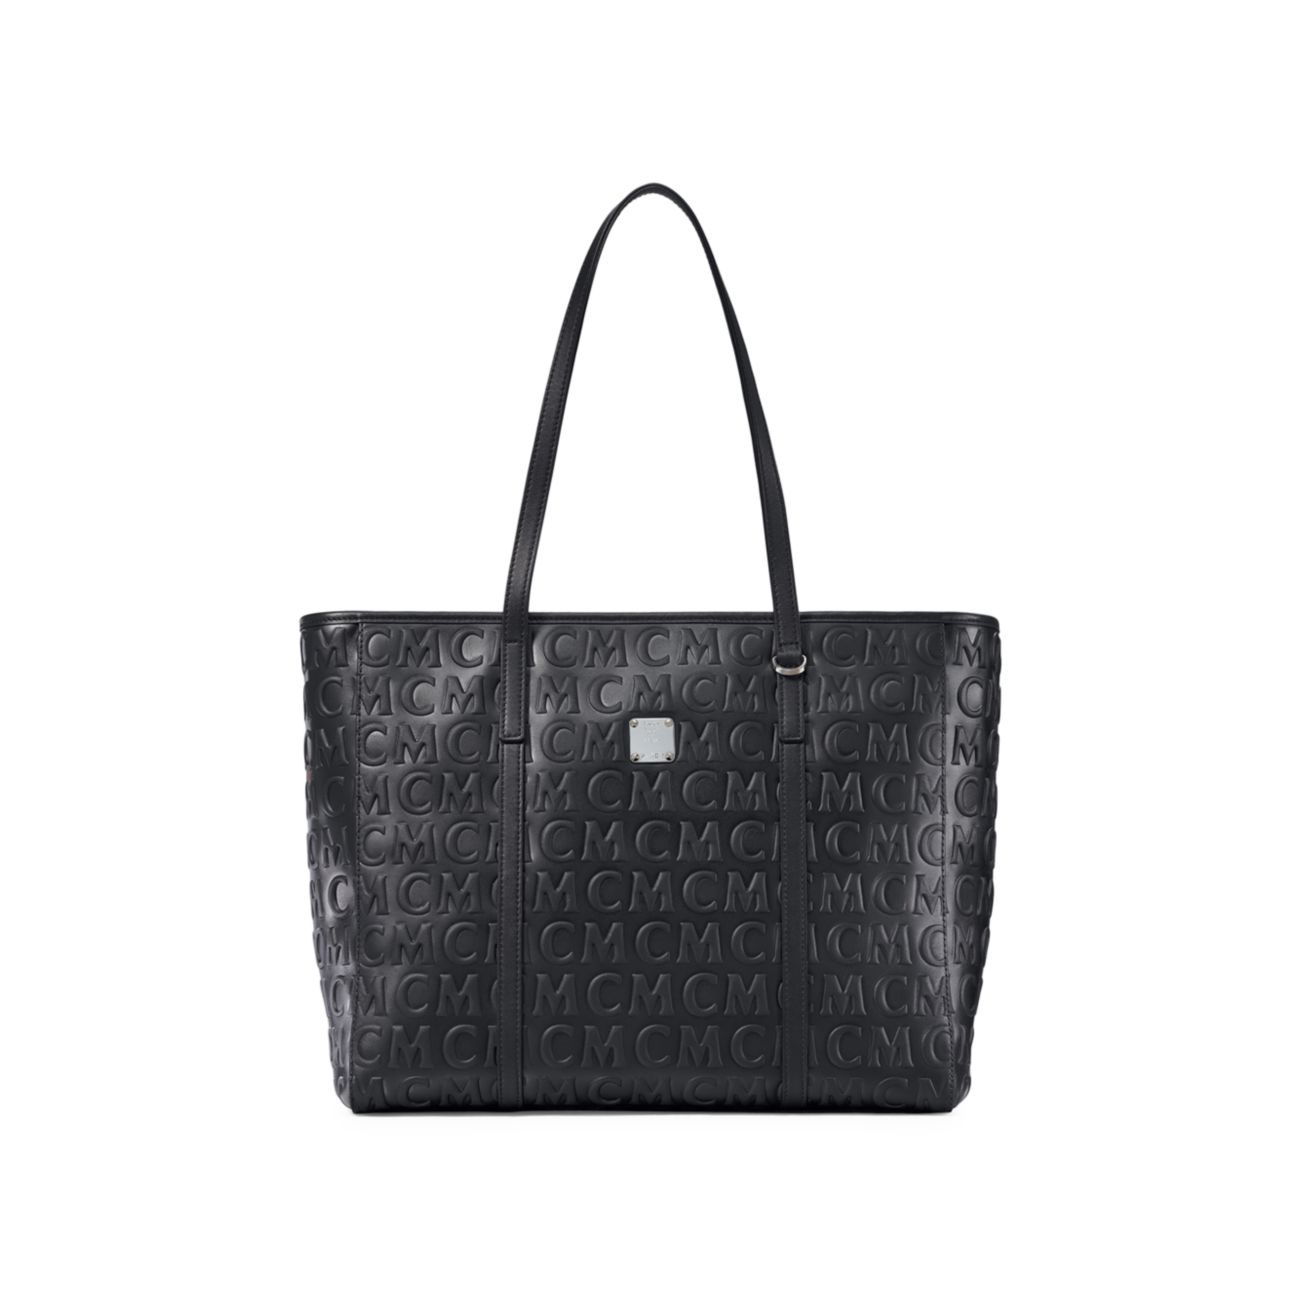 Кожаная сумка-шоппер Toni среднего размера с монограммой MCM